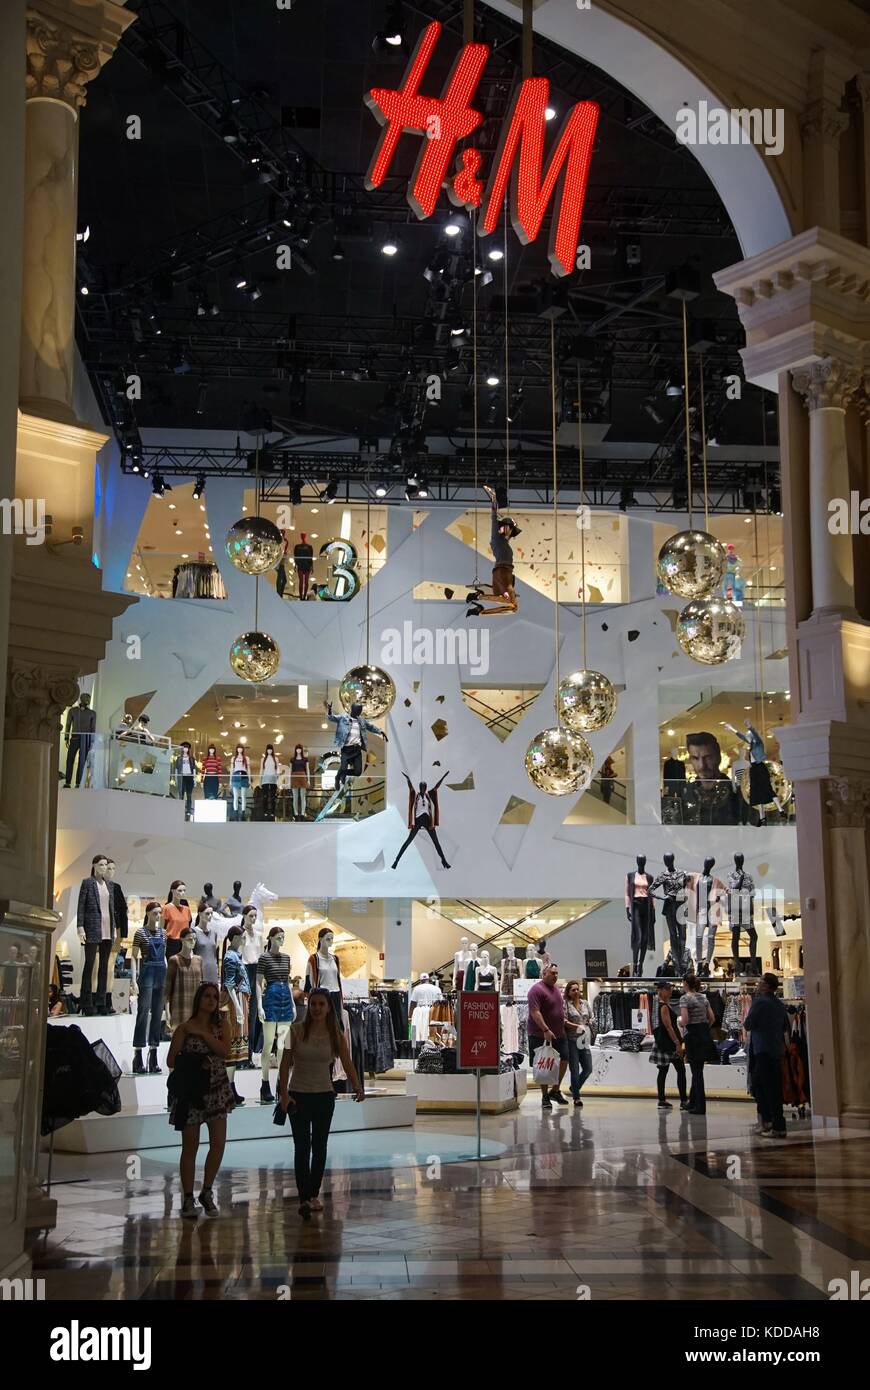 Un magasin de luxe de la marque '' Hennes & Mauritz (h&m) dans le quartier  commerçant de mâle l'hôtel ceasare Palace à Las Vegas (21 février 2016).  Les centres commerciaux font partie